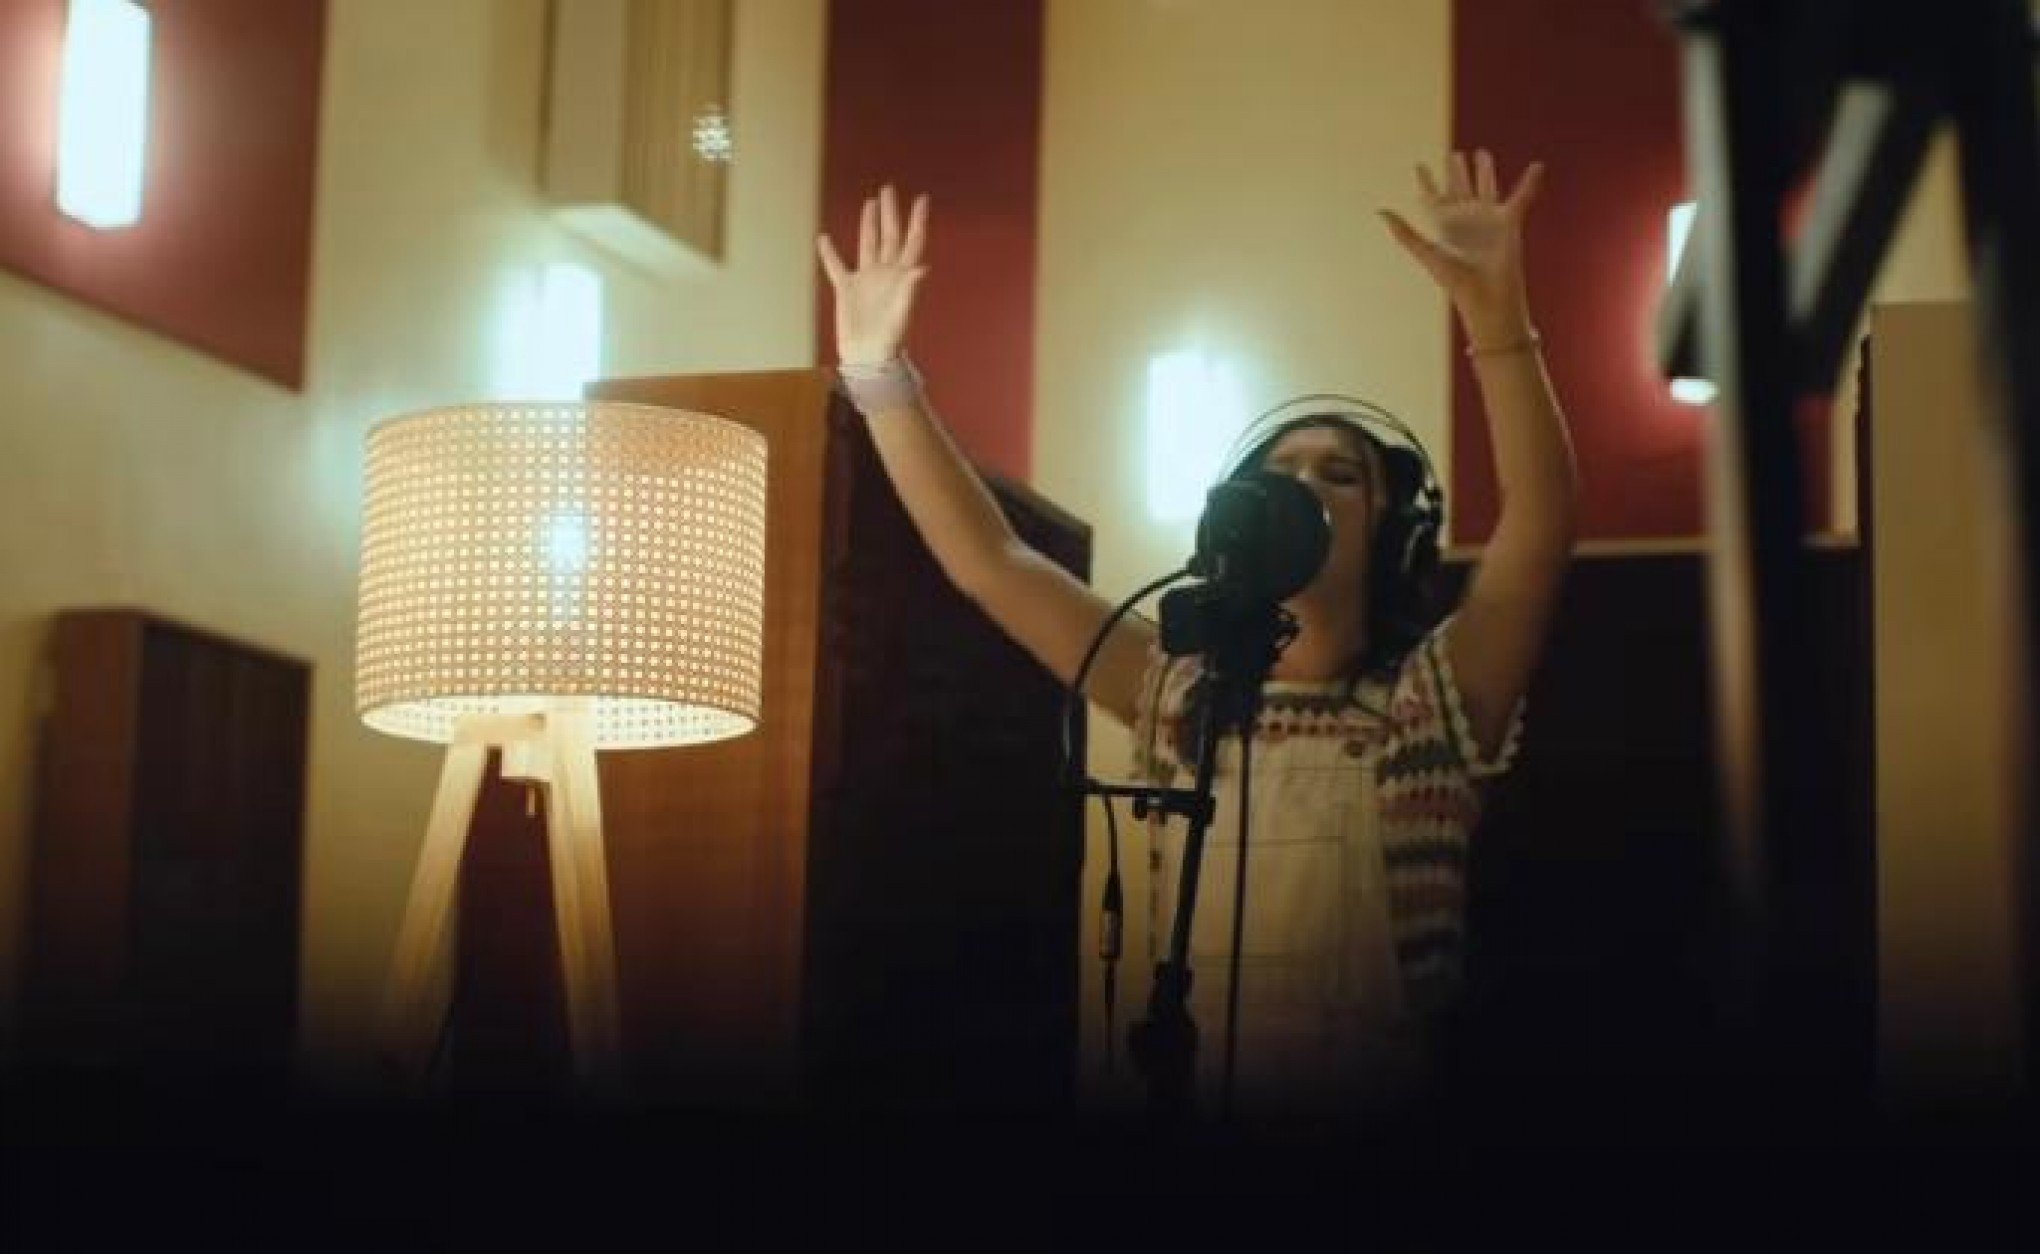 Vídeo mostra bastidores da gravação do EP de músicas autorais de Tay, do The Voice Kids